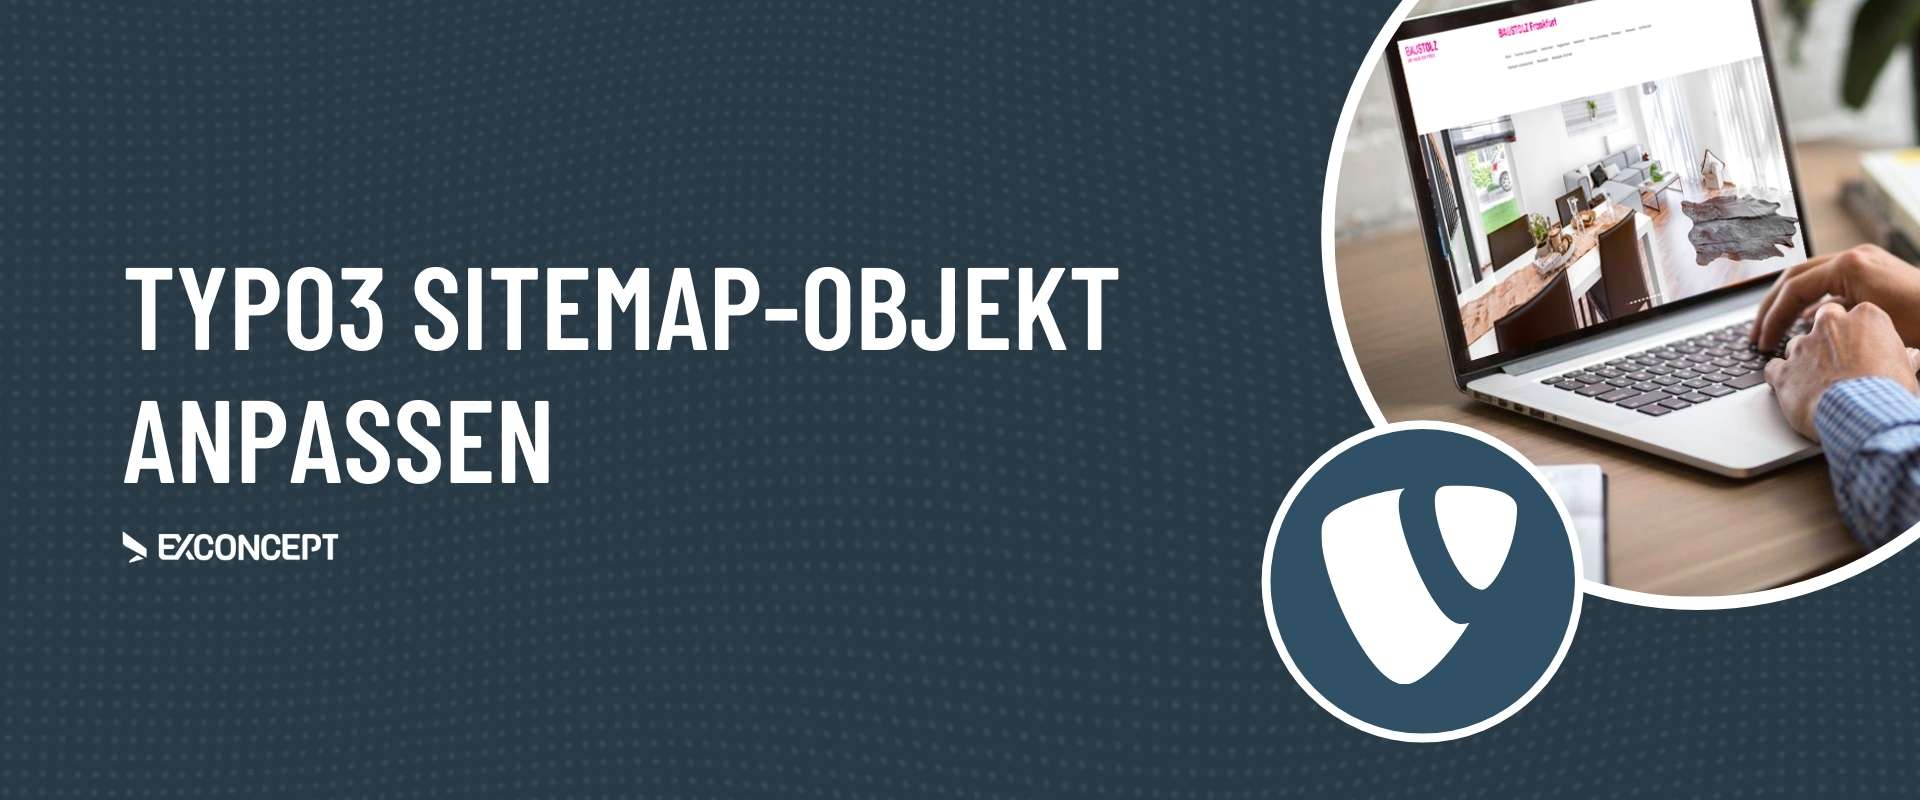 TYPO3-Support Sitemap Objekt anpassen